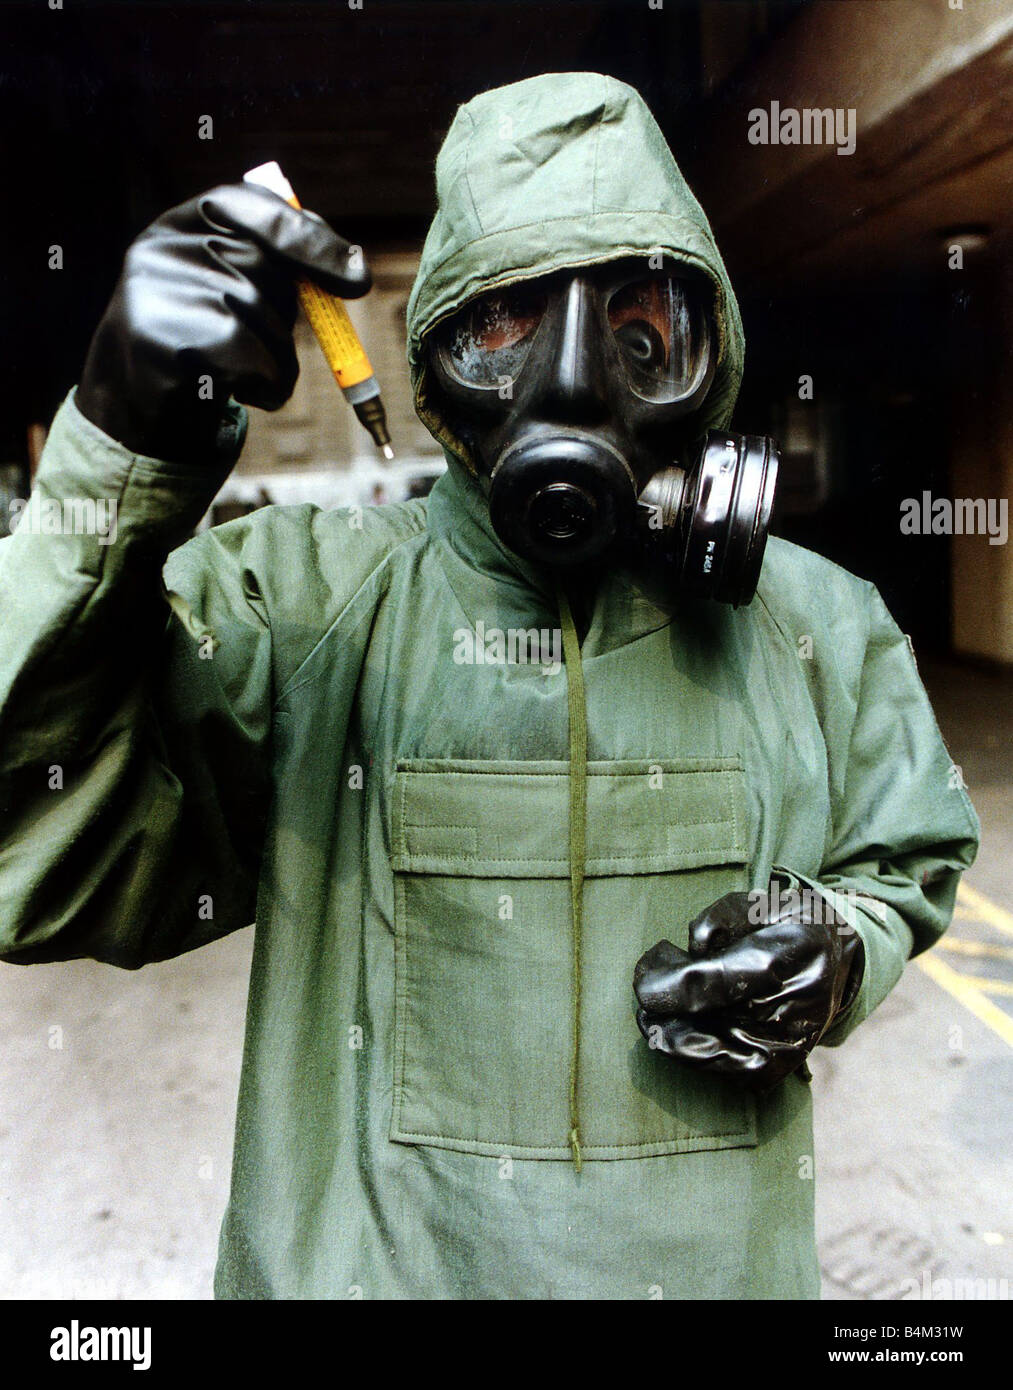 Golf-Krieg 1990 Krieg im Irak August 1990 Dr. Alistair Hay Gegenmittel Spritze halten, während chemische Kriegsführung Schutz Anzug Stockfoto